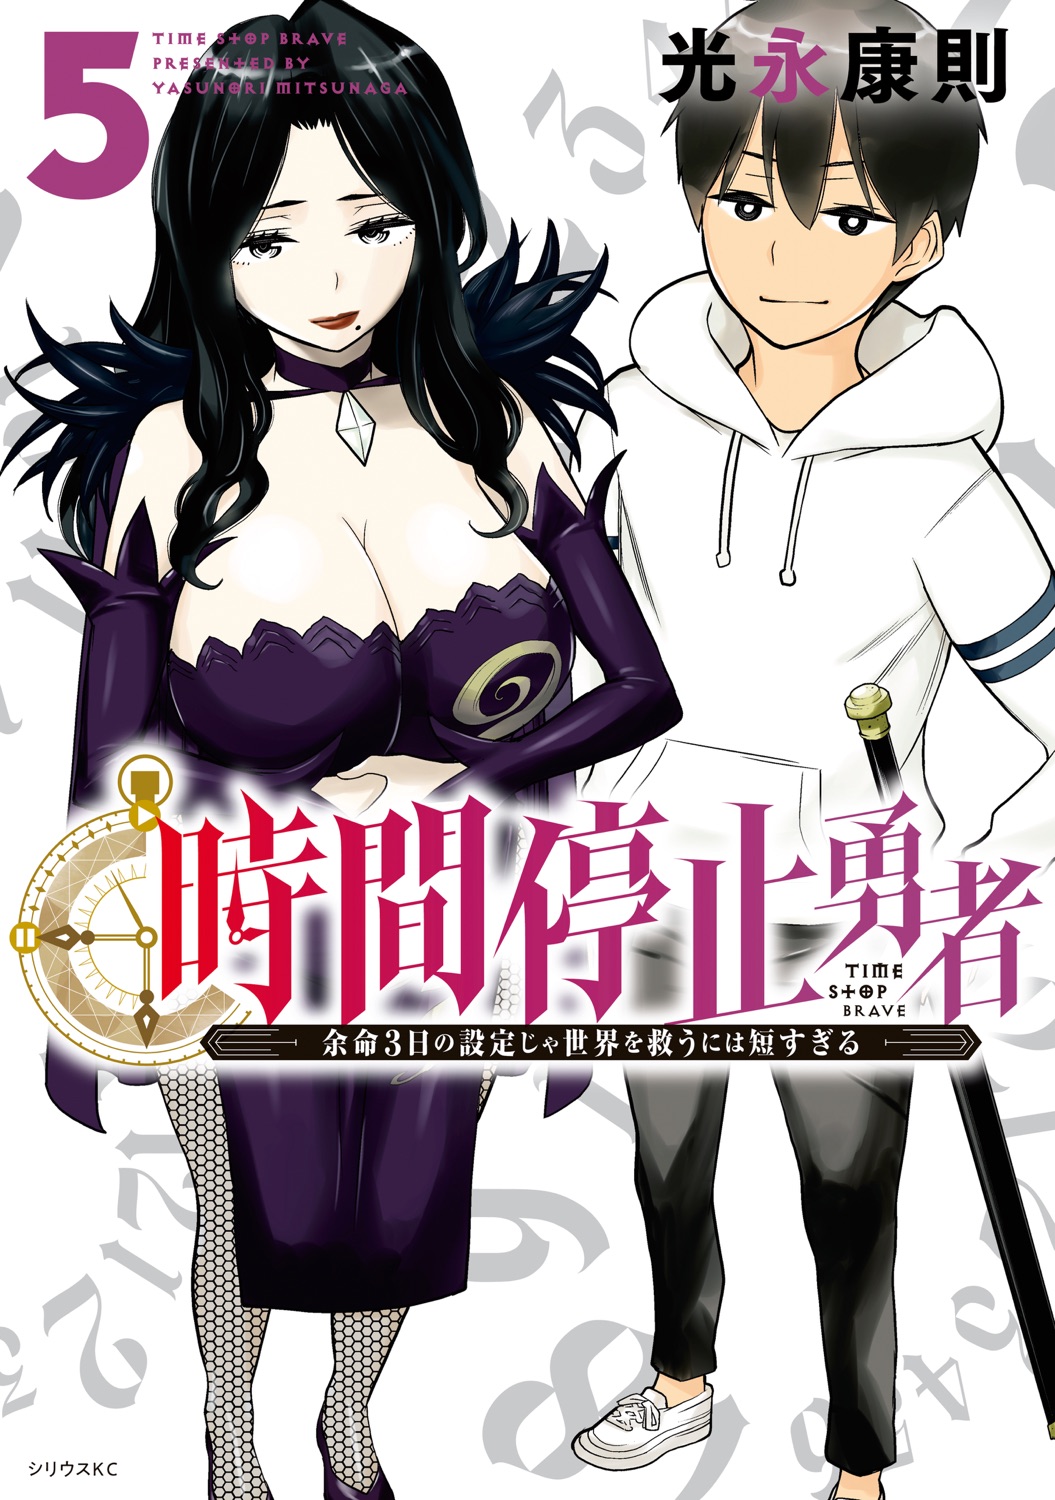 Ore dake Haireru Kakushi Dungeon: Kossori Kitaete Sekai Saikyou #3 - Vol. 3  (Issue)